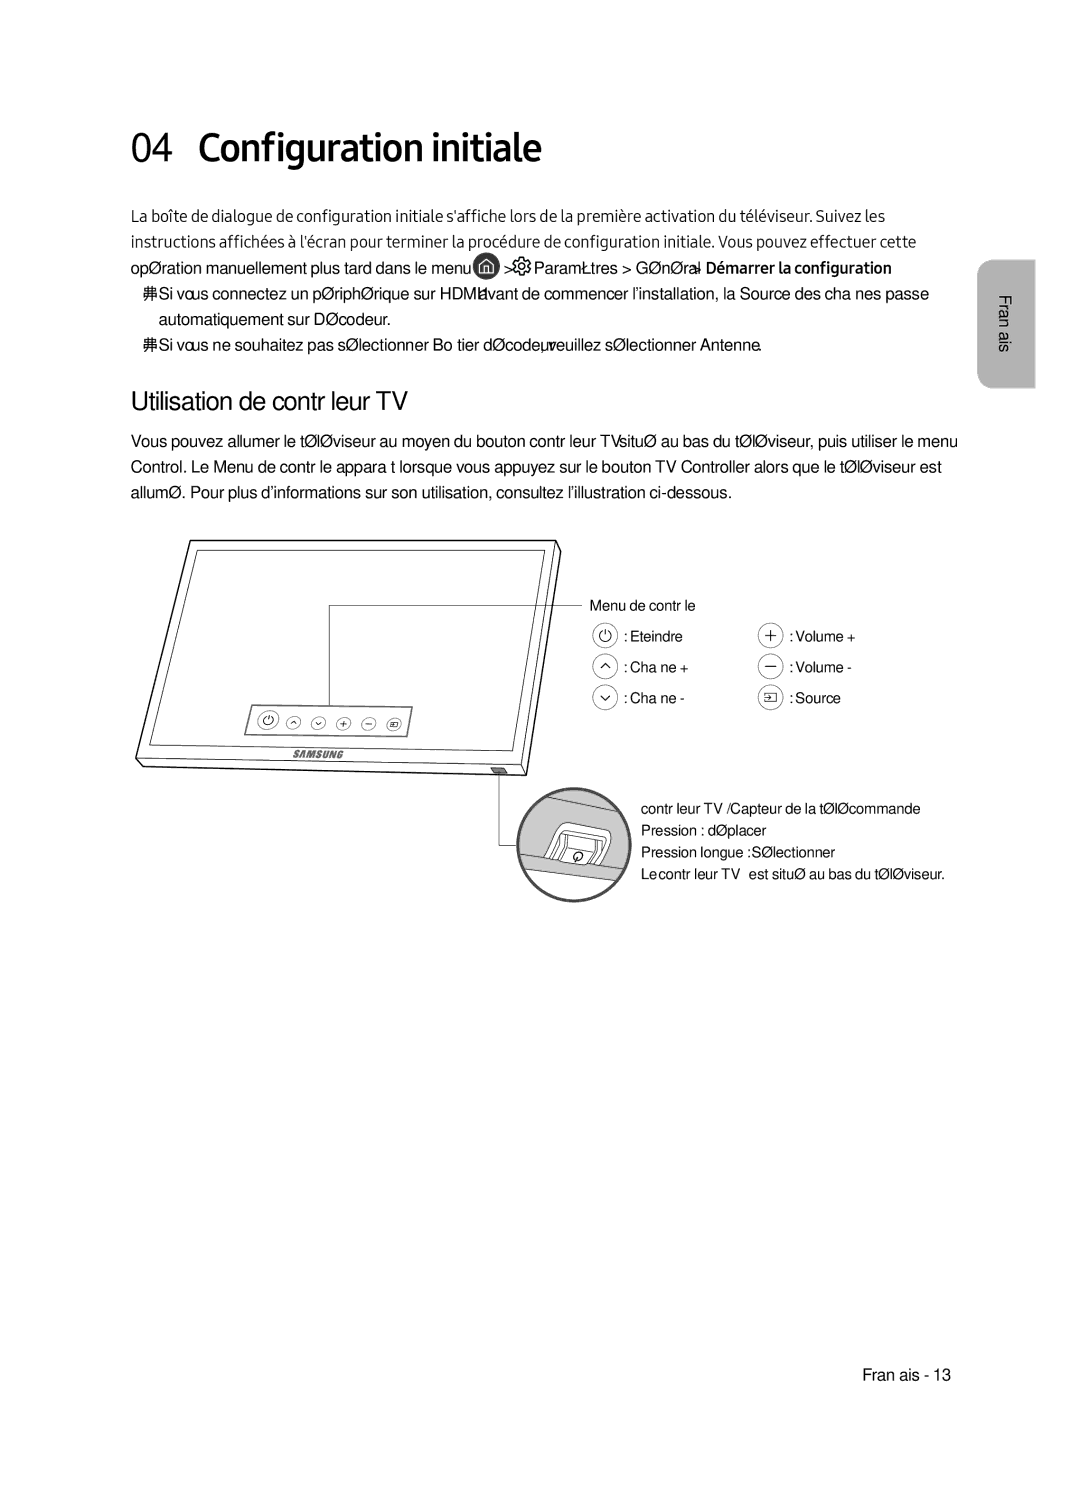 Samsung UE82MU7000LXXN, UE65MU7000LXXN, UE55MU7000LXXN, UE49MU7000LXXN Configuration initiale, Utilisation de contrôleur TV 